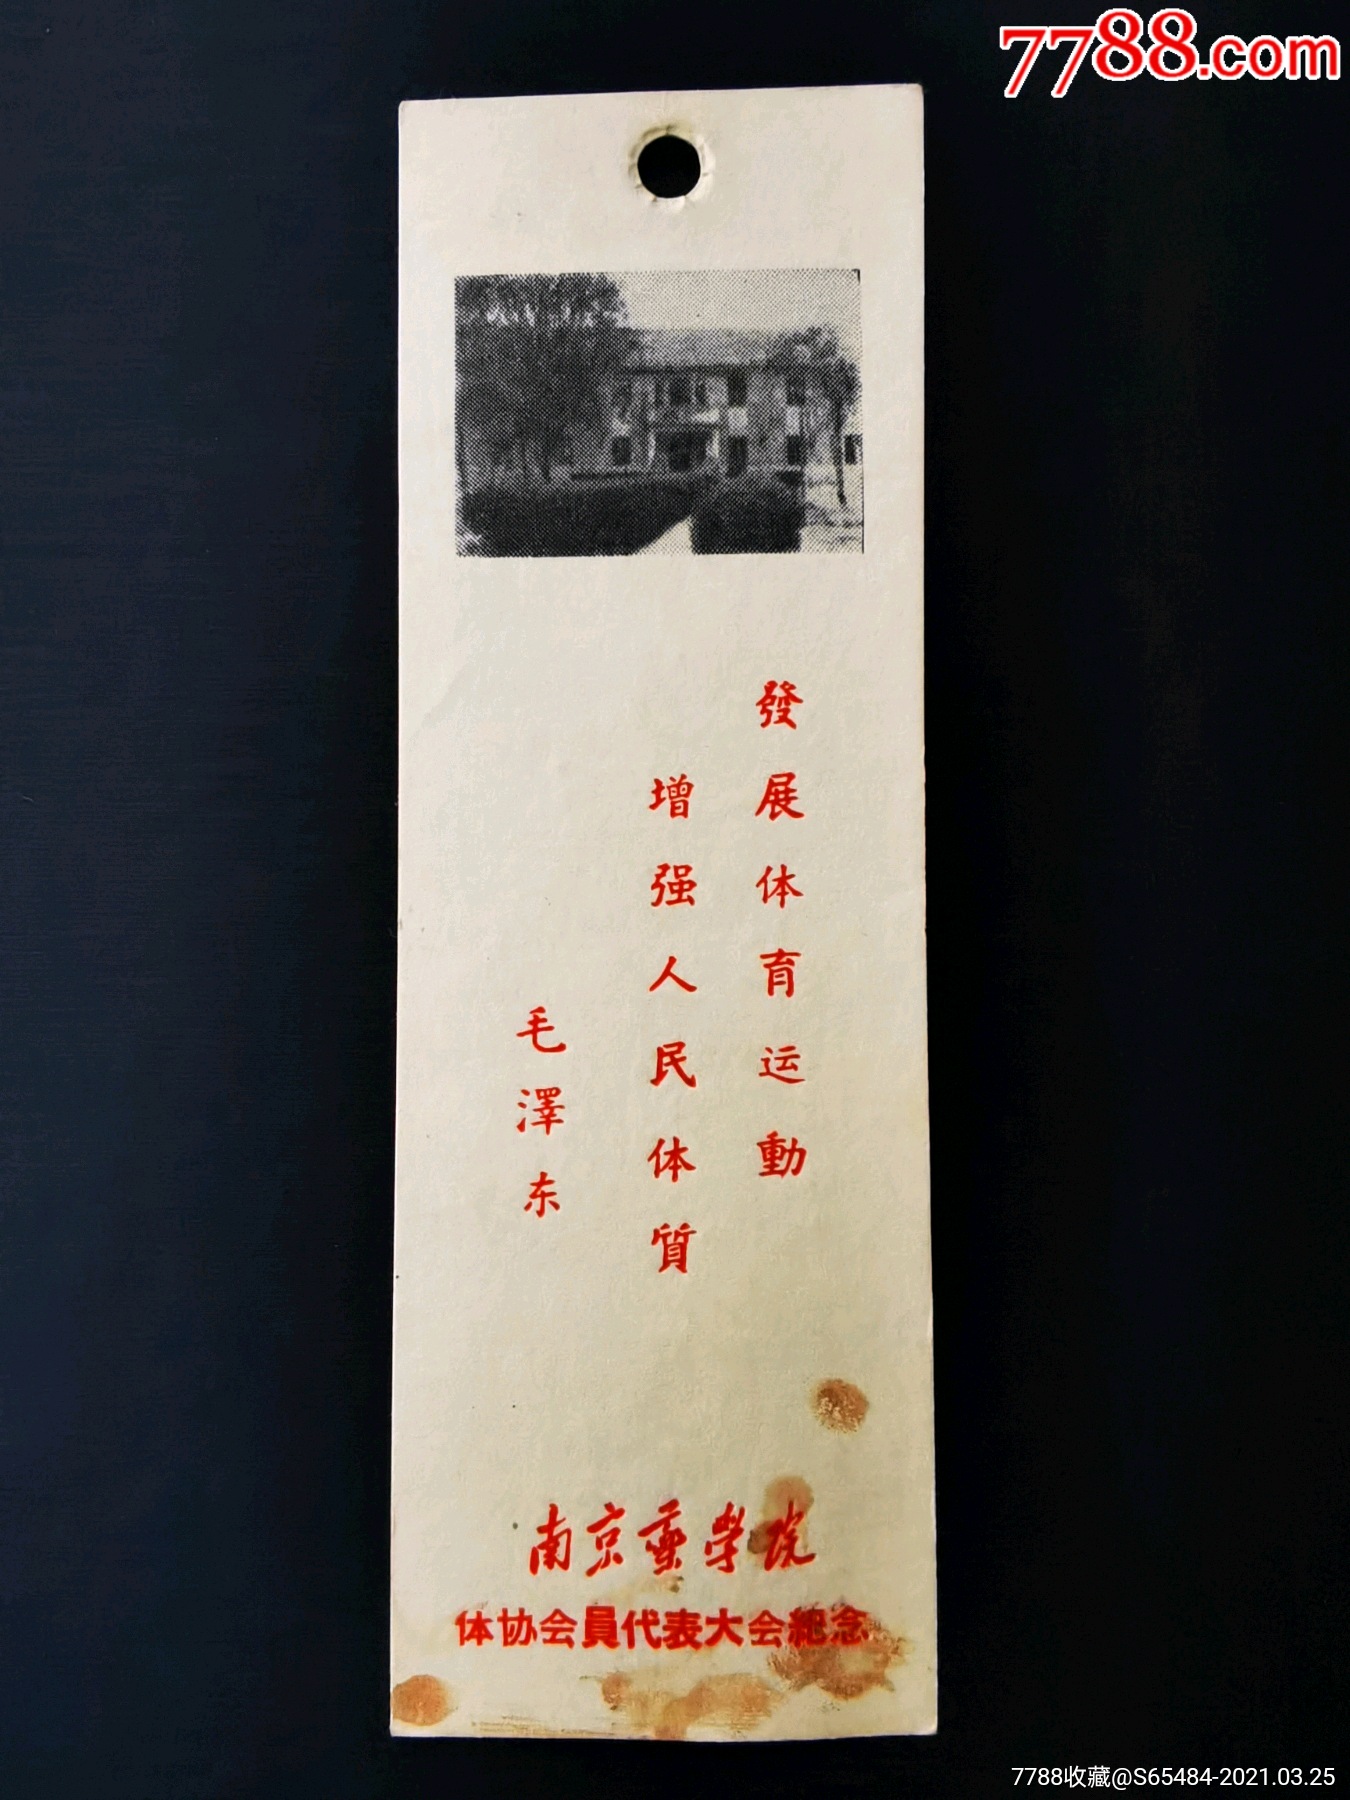 南京药学院体协会员代表大会纪念书签_价格100元【飞翔收藏】_第1张